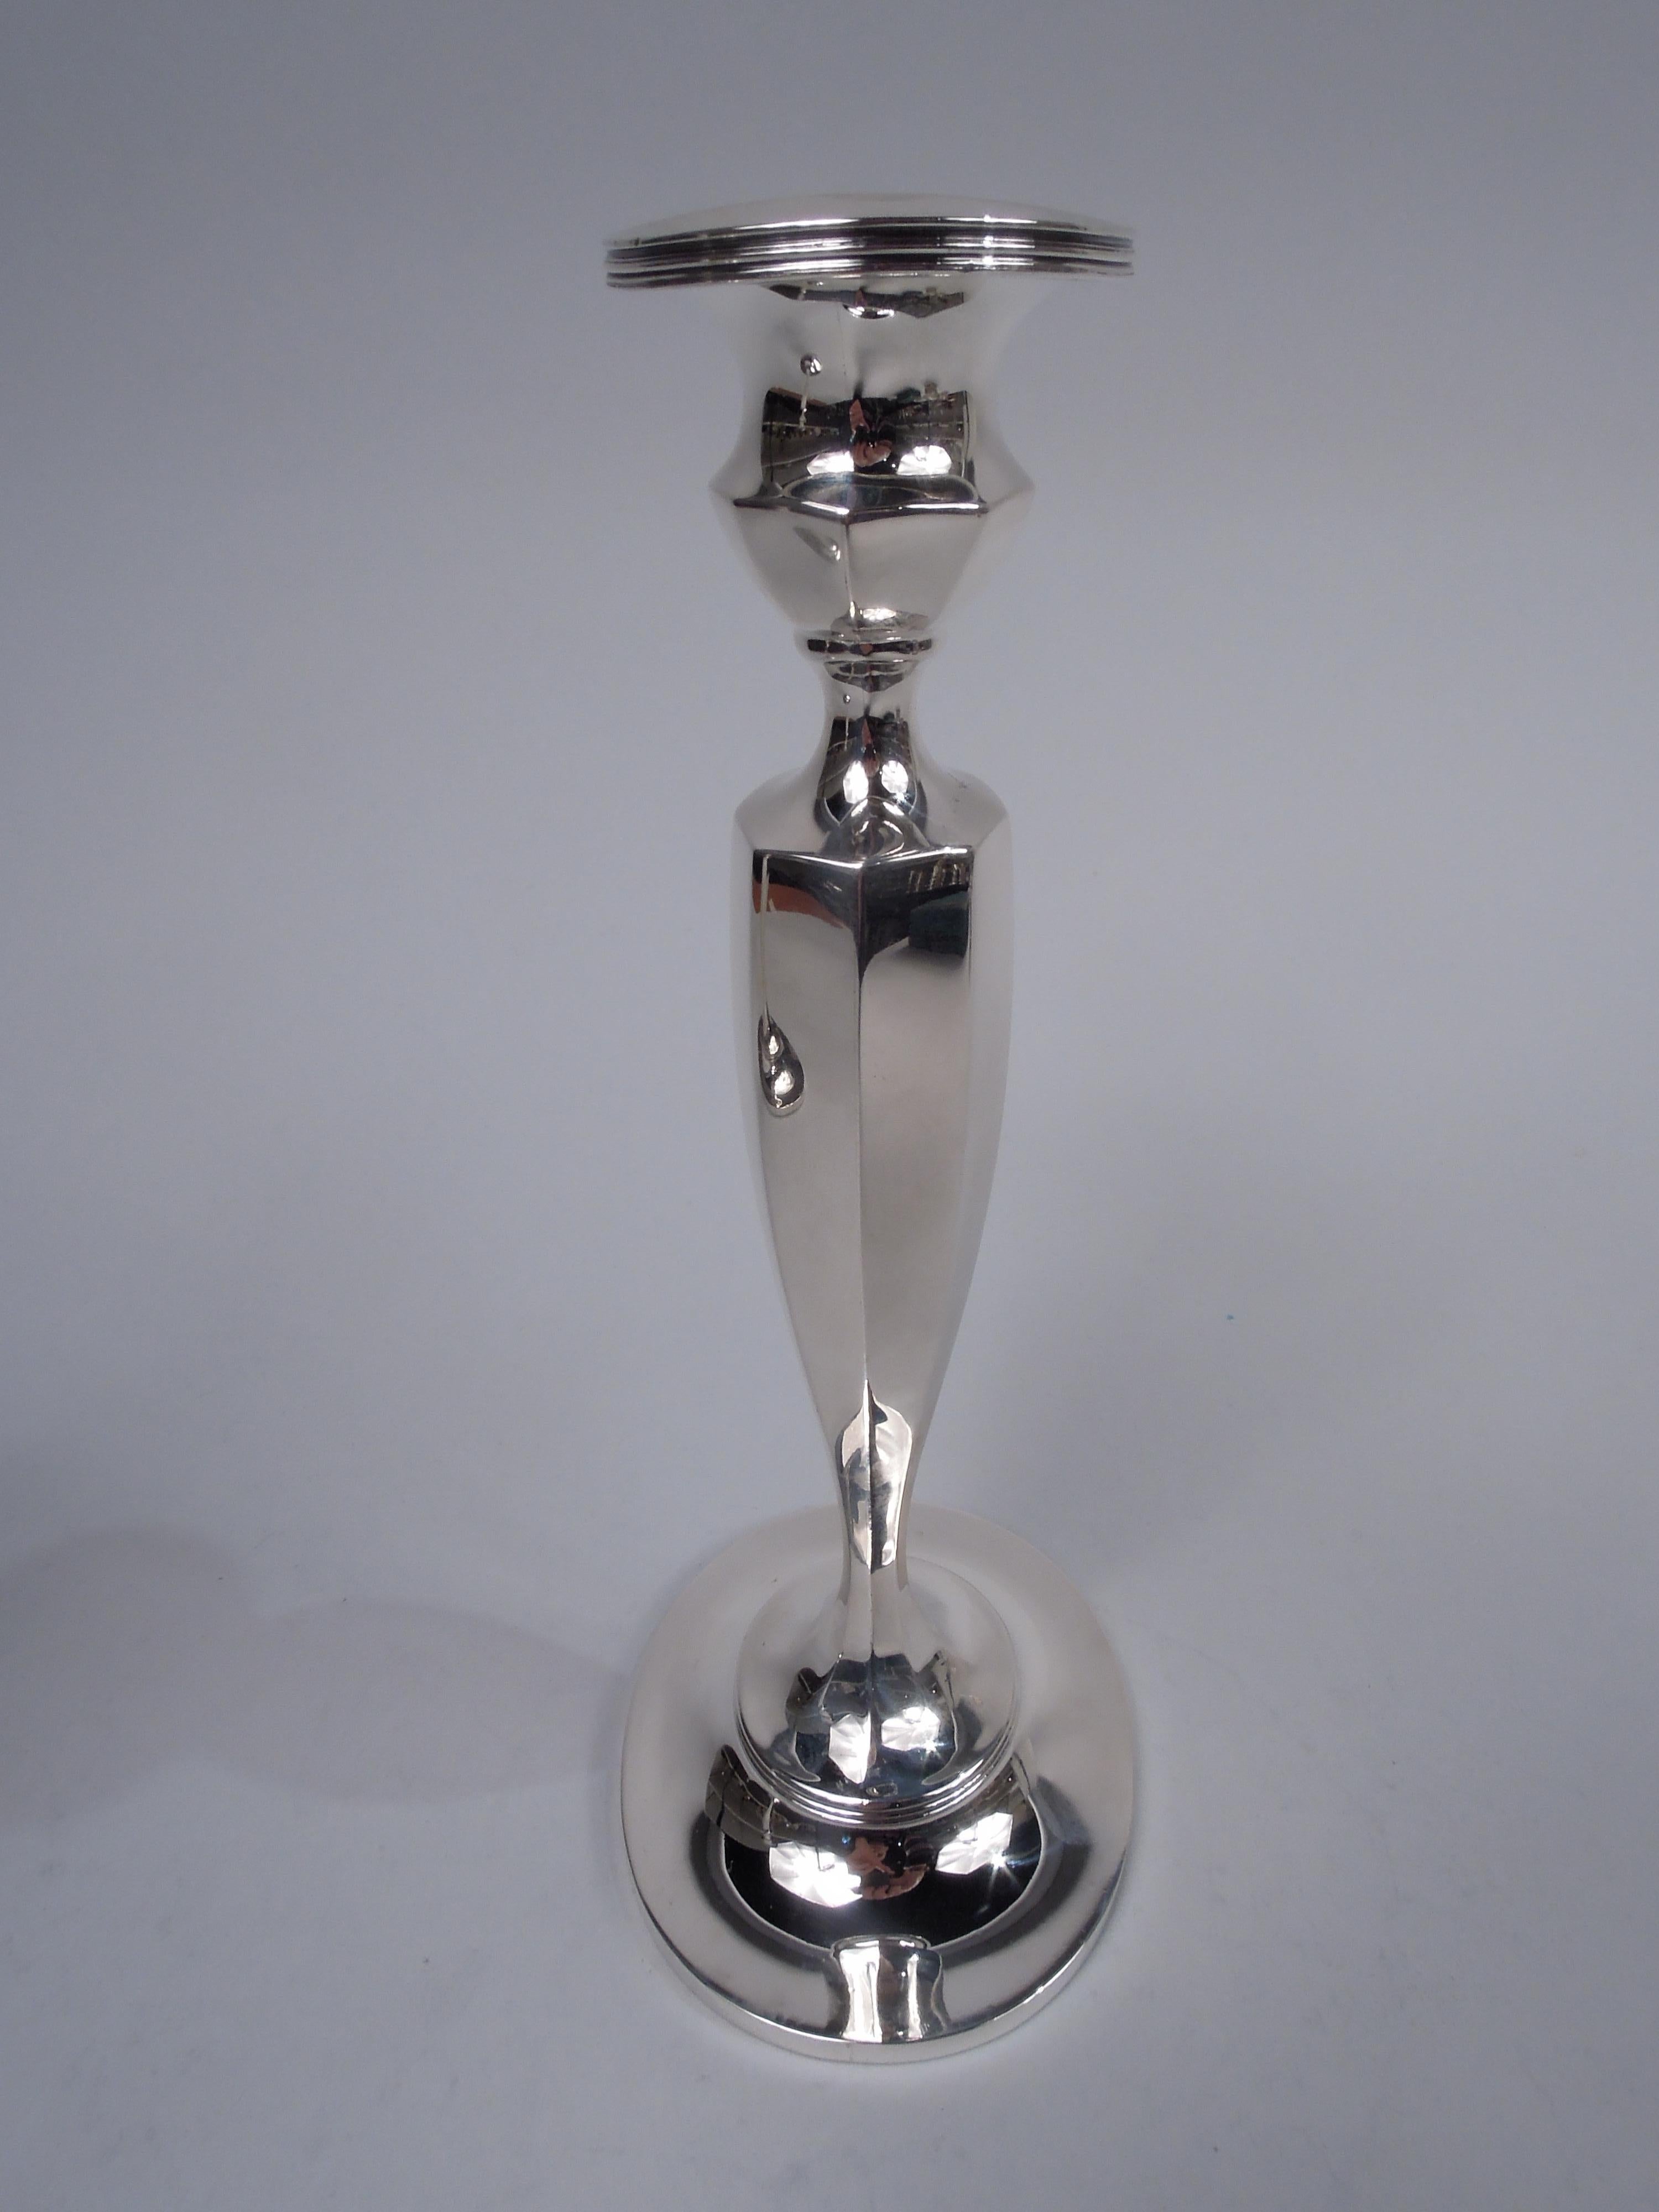 Paar amerikanische edwardianische Kerzenhalter aus georgianischem Sterlingsilber, um 1910. Wiederverkauft von Tiffany & Co. in New York. Glockenförmige Muffe mit Bobeche auf konischem Schaft auf gewölbtem Fuß montiert. Eiförmig, facettiert und